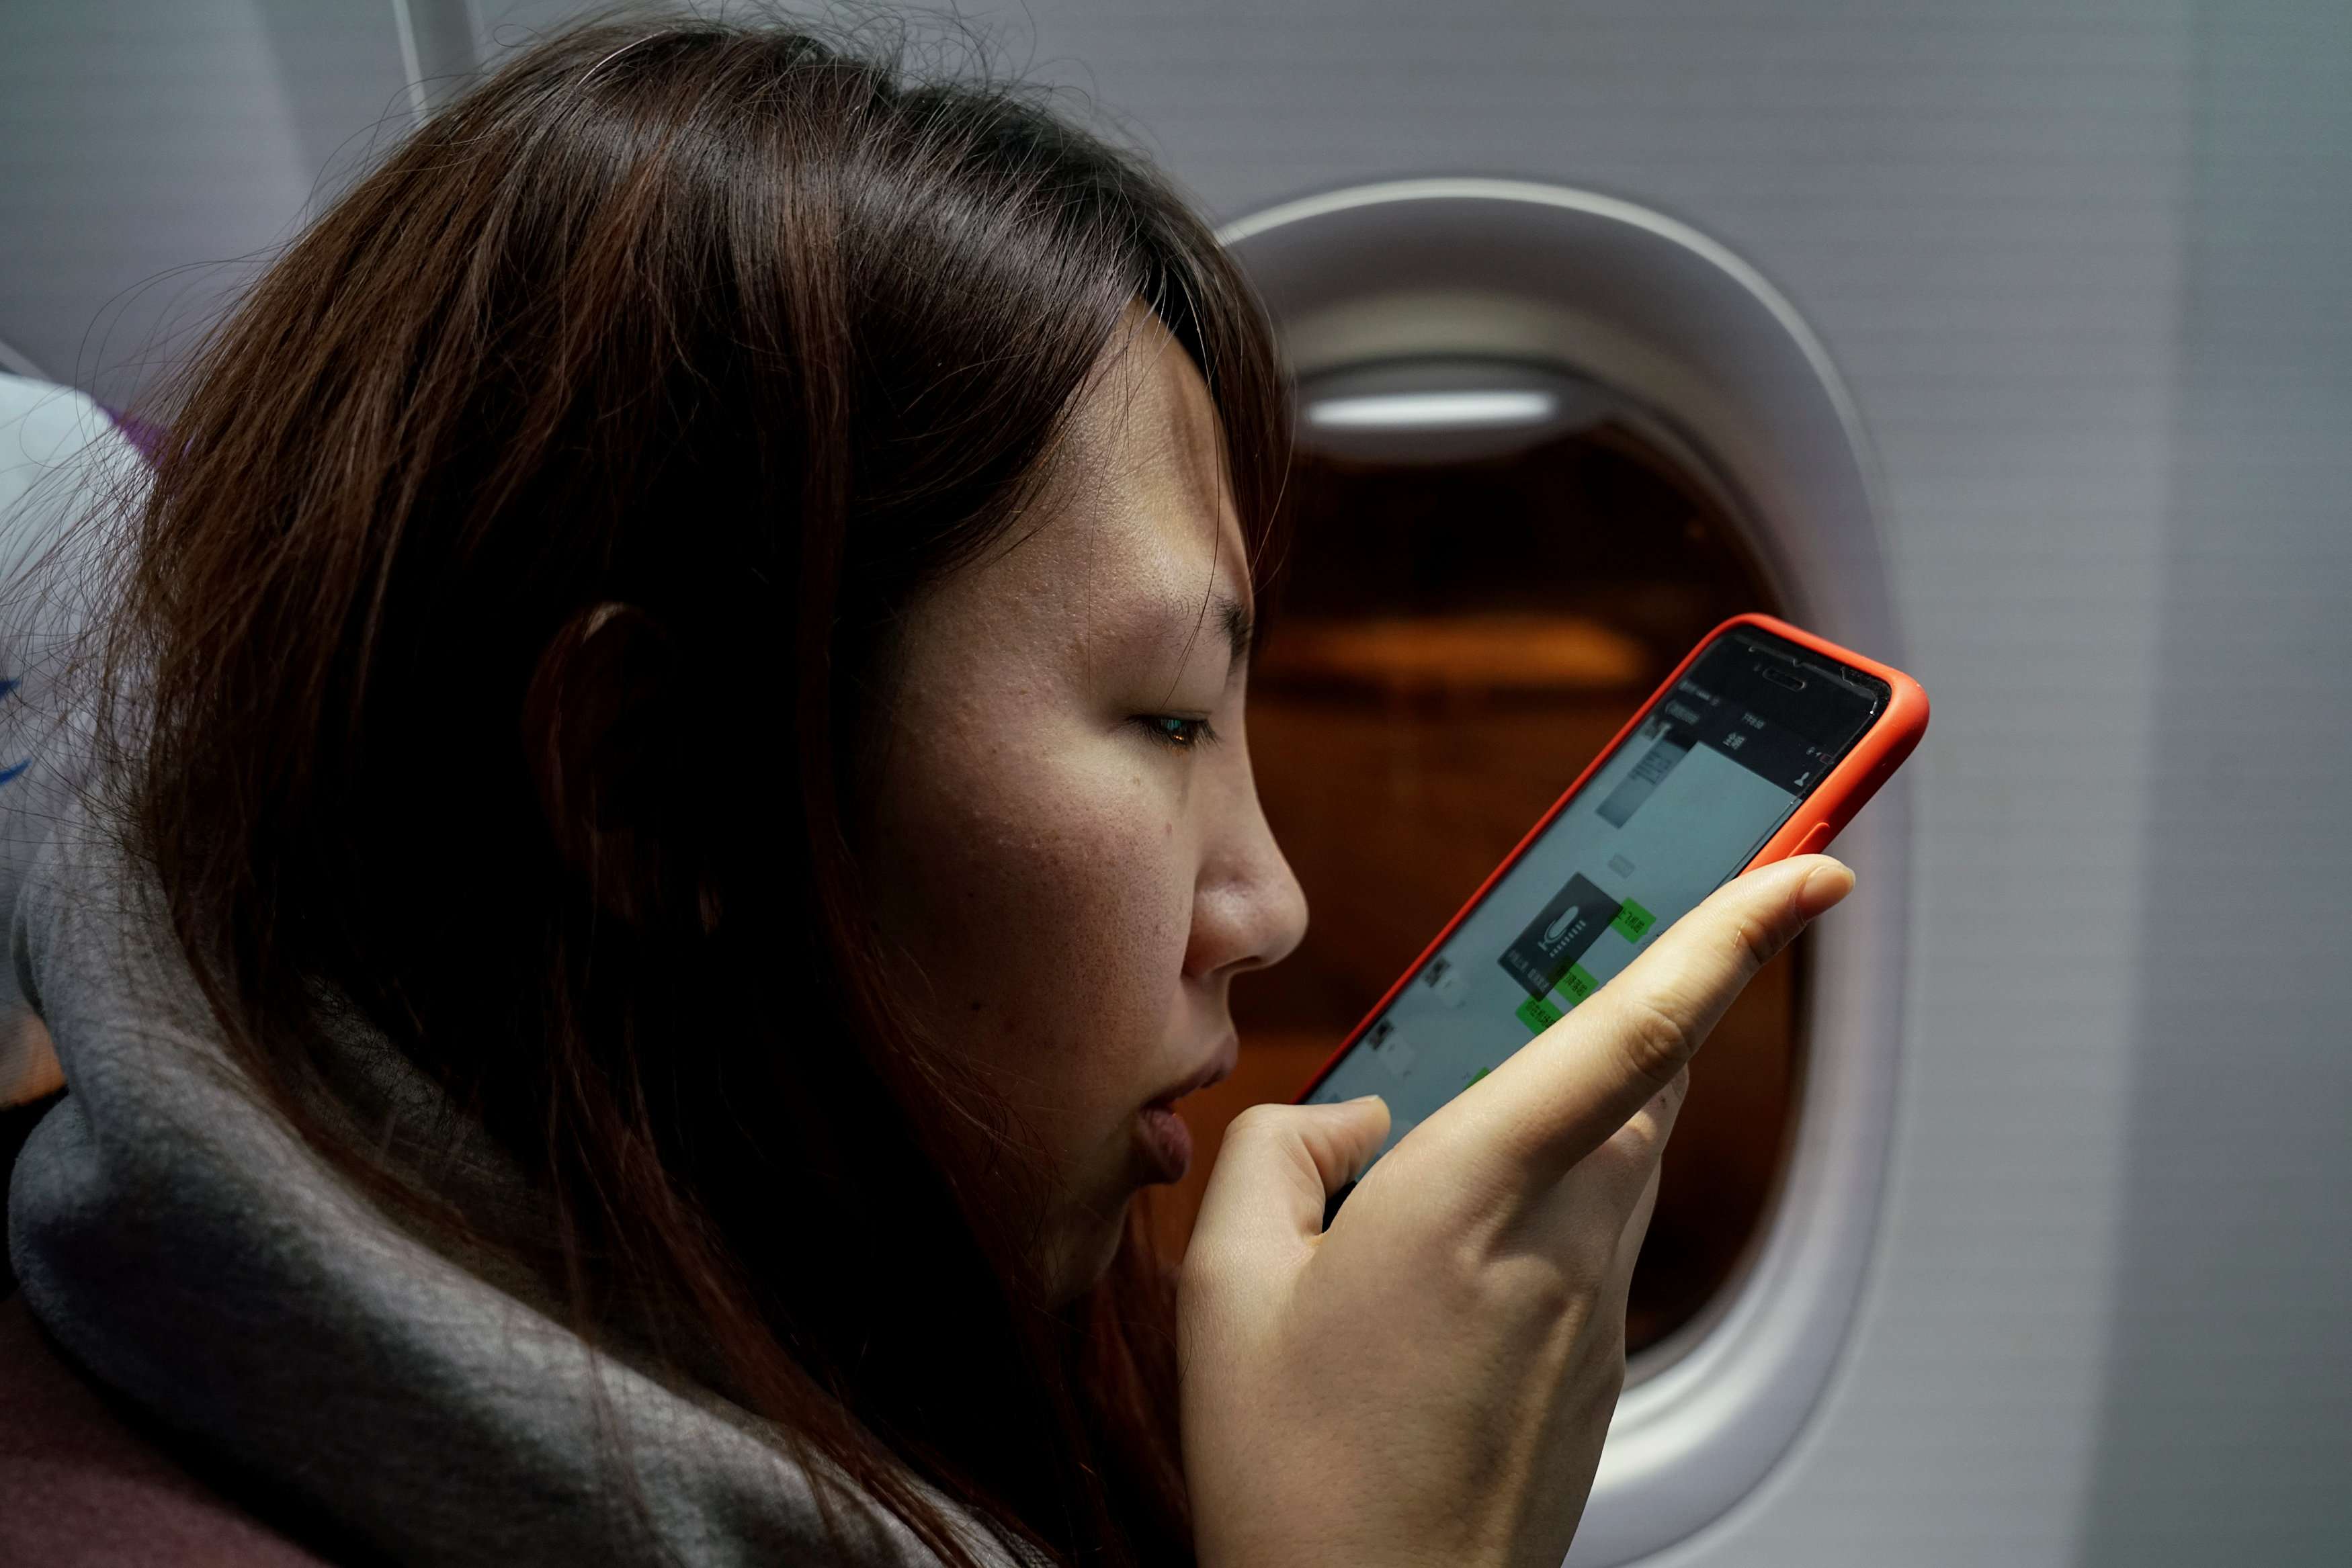 مسافرة صينية تستخدم هاتفها في الطائرة